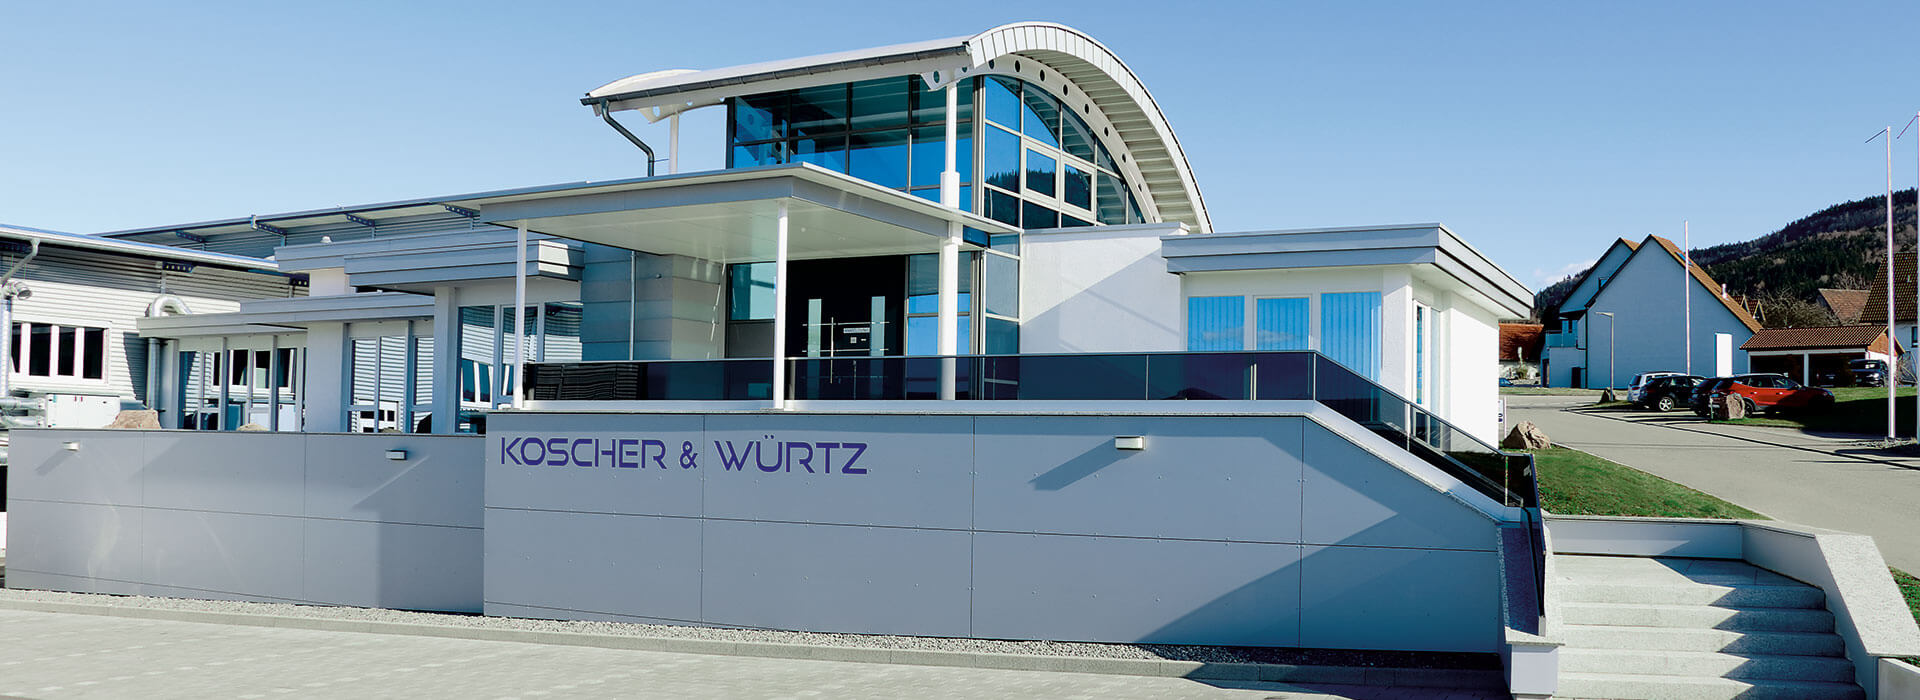 Koscher & Würtz Entrance